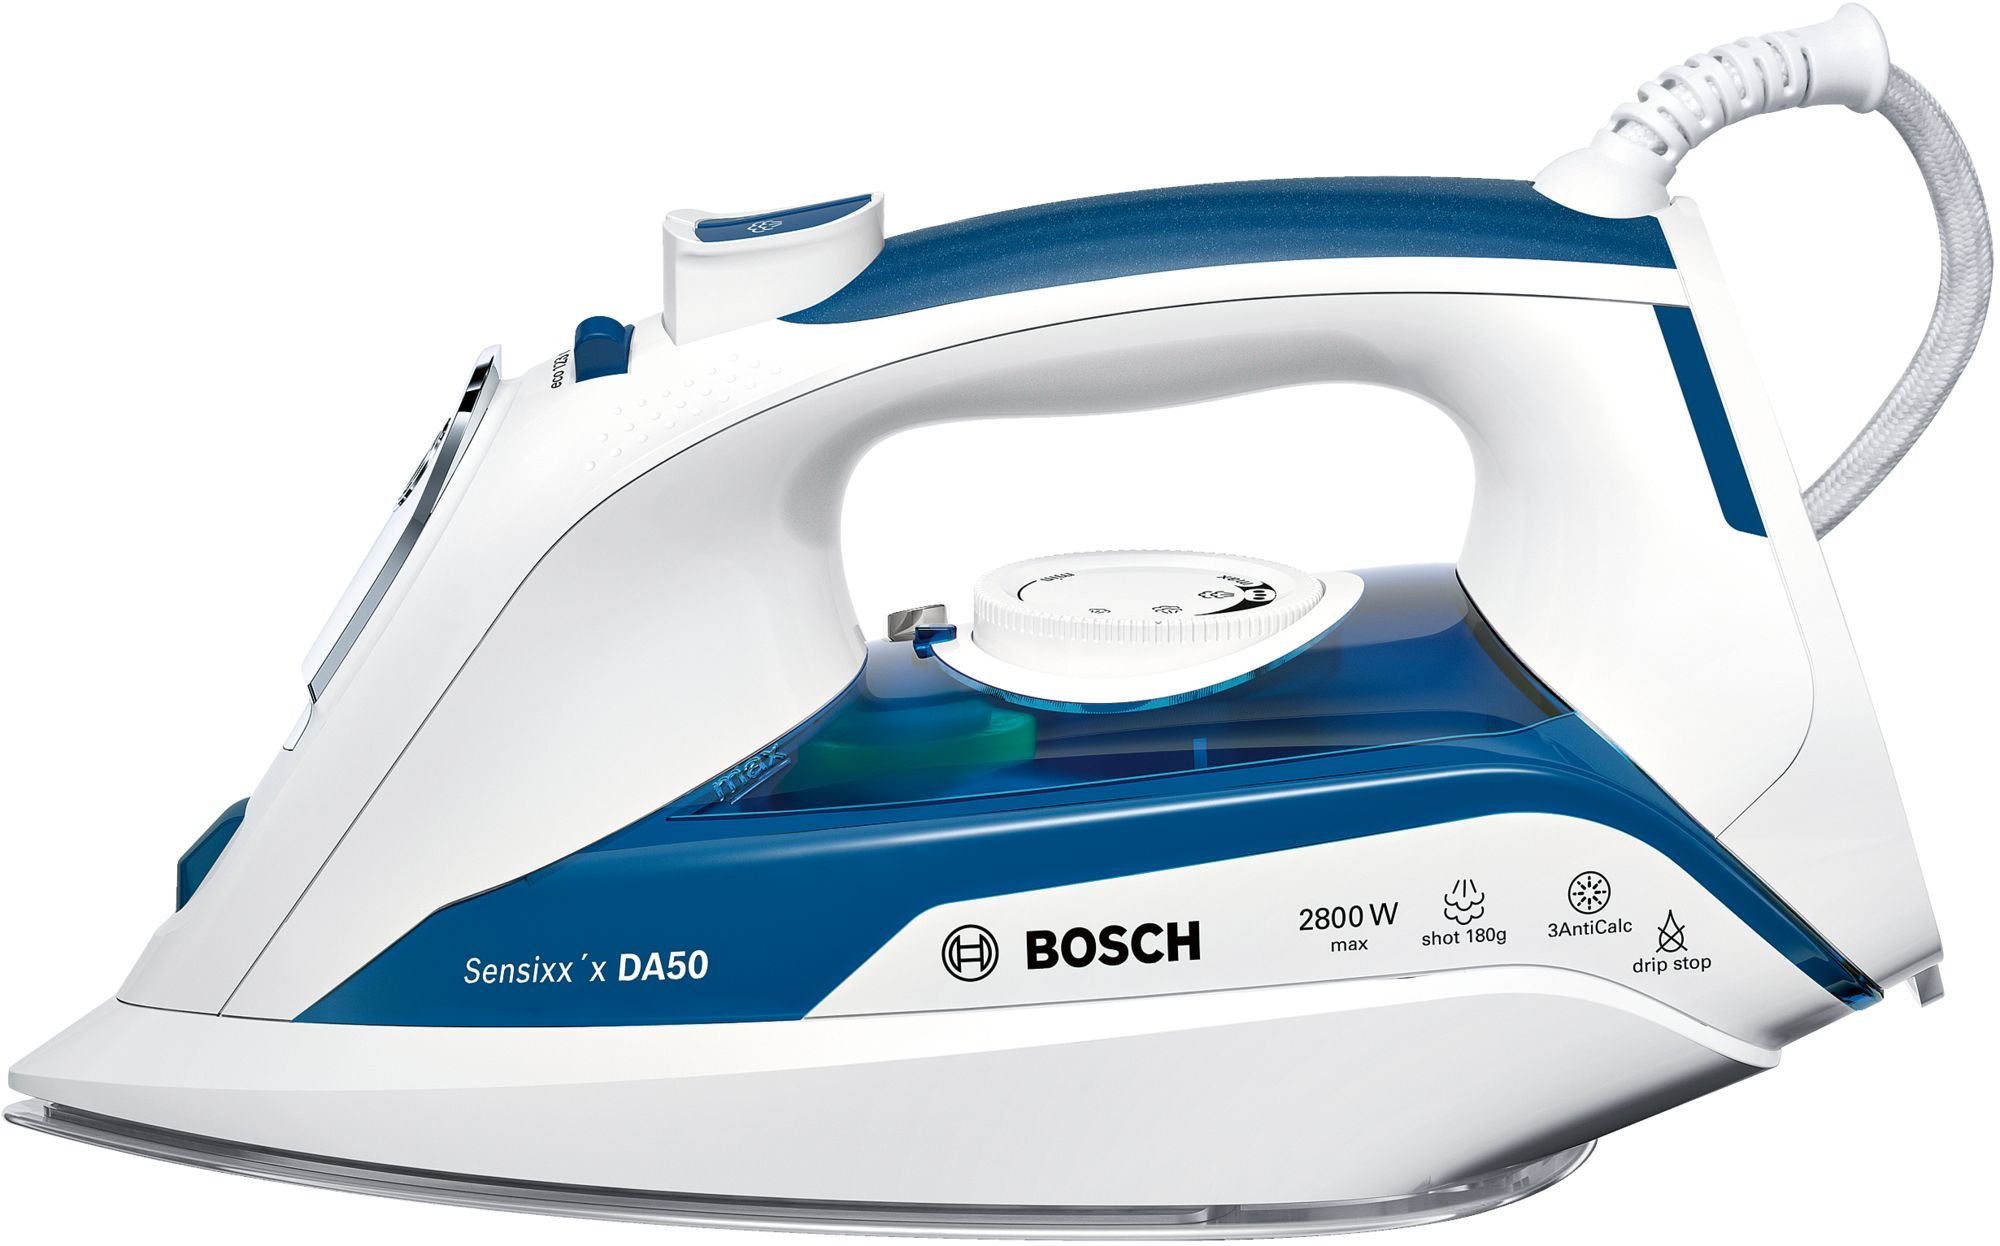 Утюг Bosch TDA5028010